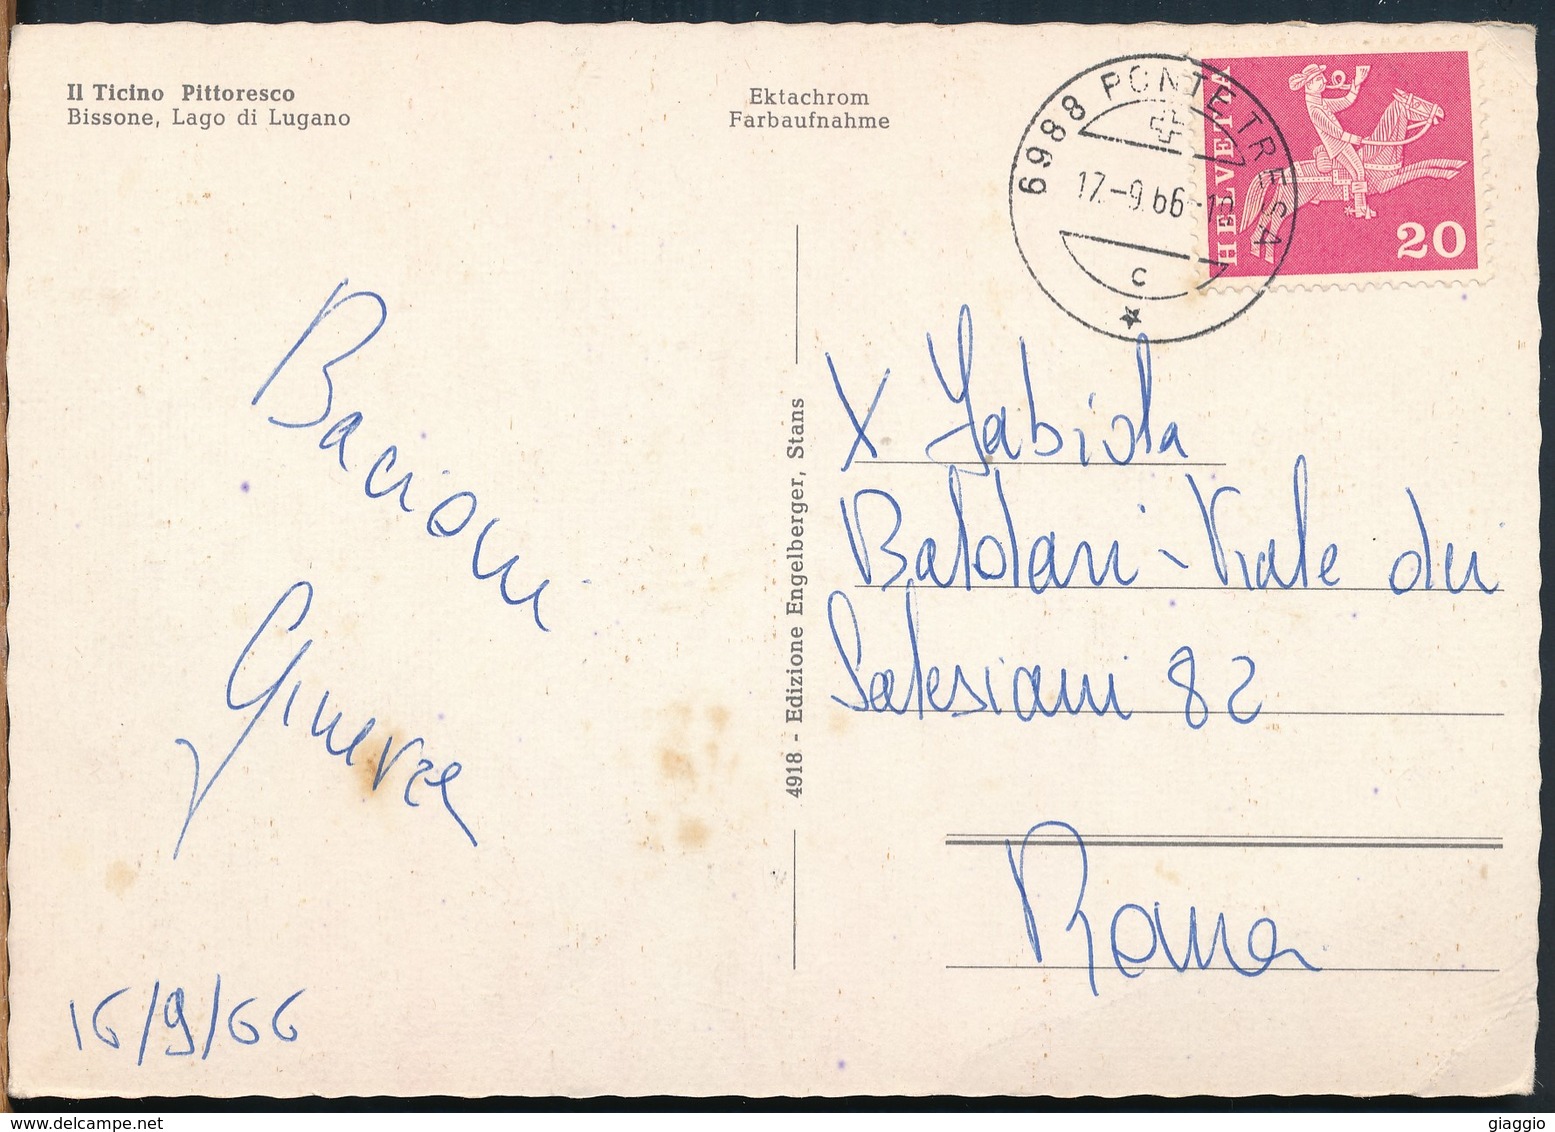 °°° 16096 - SVIZZERA - TI - BISSONE , LAGO DI LUGAO - 1966 With Stamps °°° - Bissone